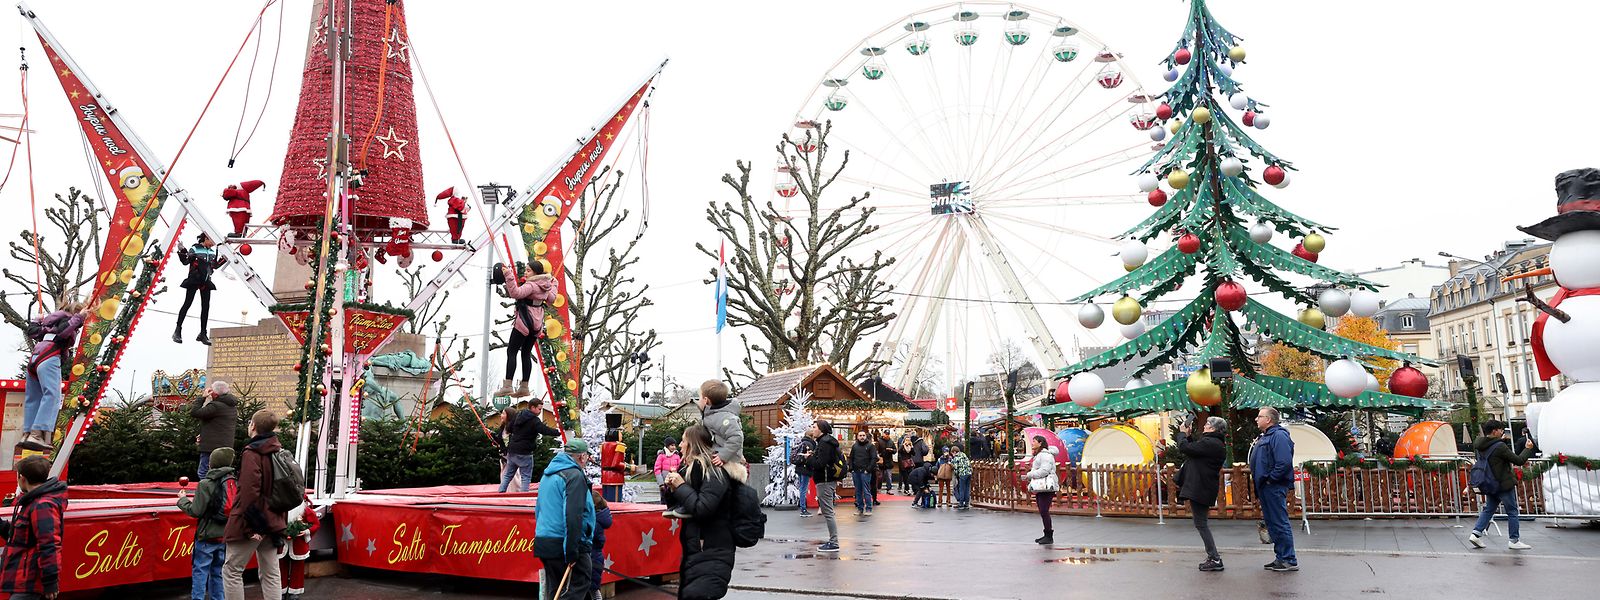 Le marché de Noël de Luxembourg-Ville est très fréquenté, surtout le week-end.